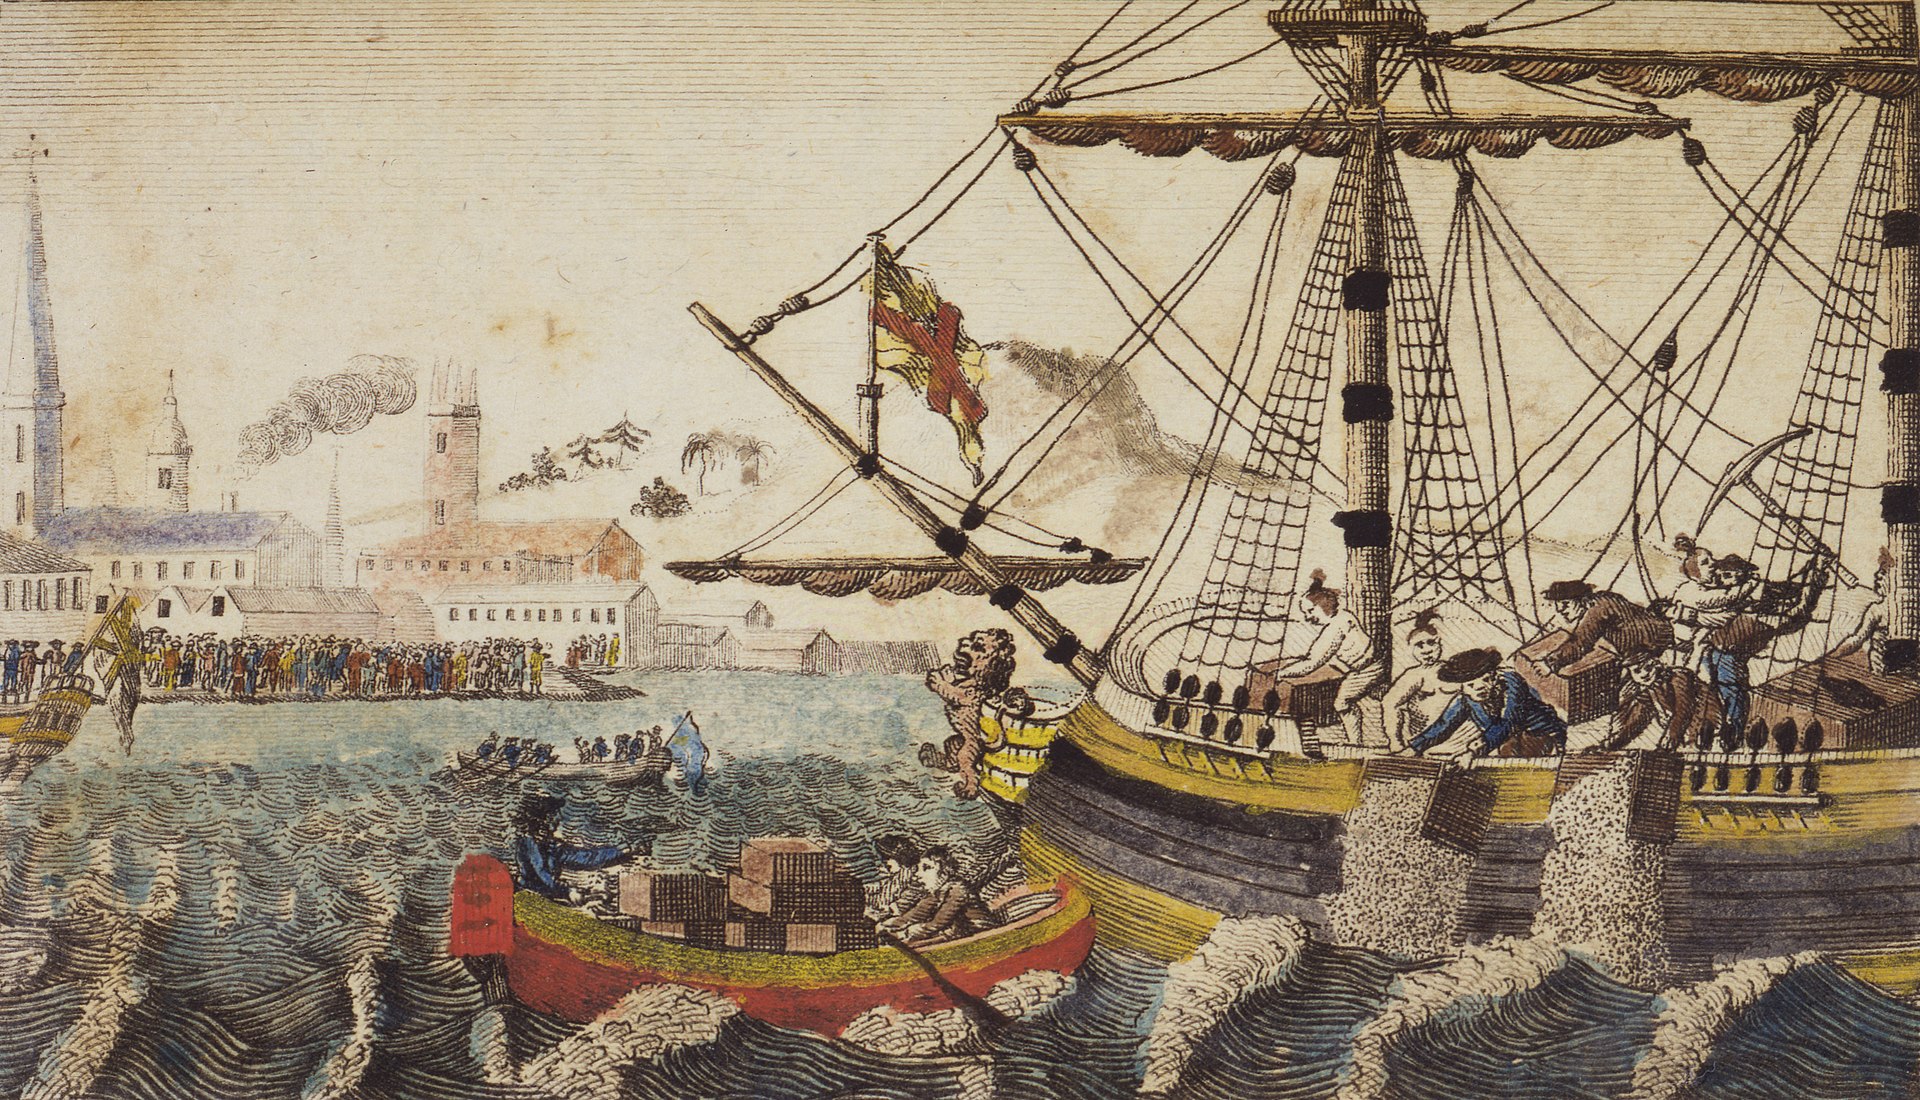 Lei do Chá - Conheça a lei americana que resultou na famosa Festa do Chá de Boston (Imagem: Pintura "Boston Tea Party", de W. D. Cooper, 1789)